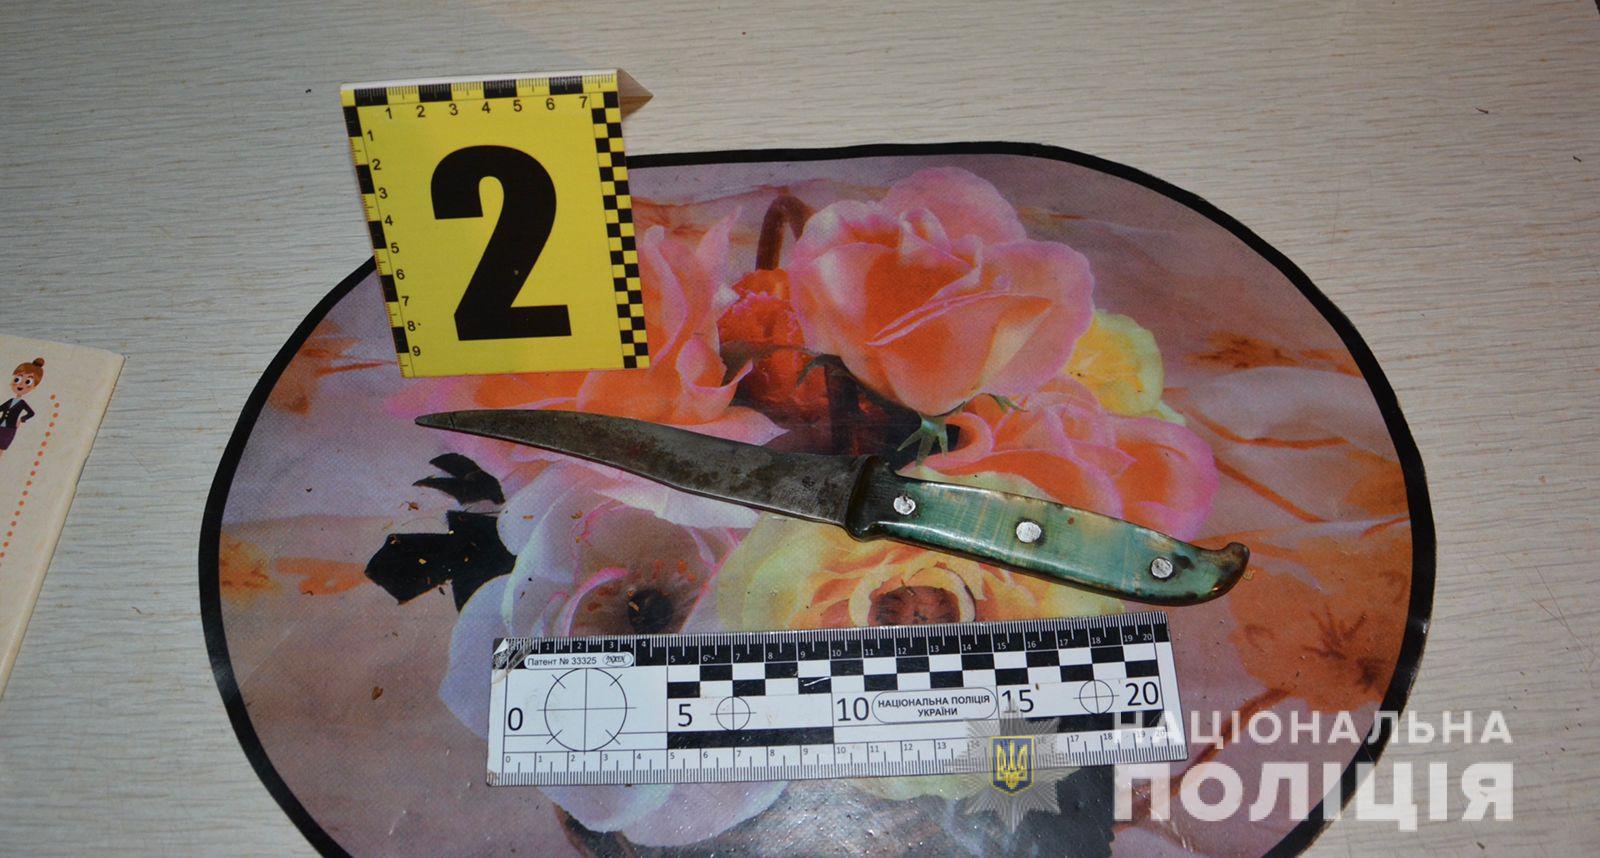 У Великому Березному під час п'яної сварки жінка вдарила співмешканця ножем у живіт (ФОТО)